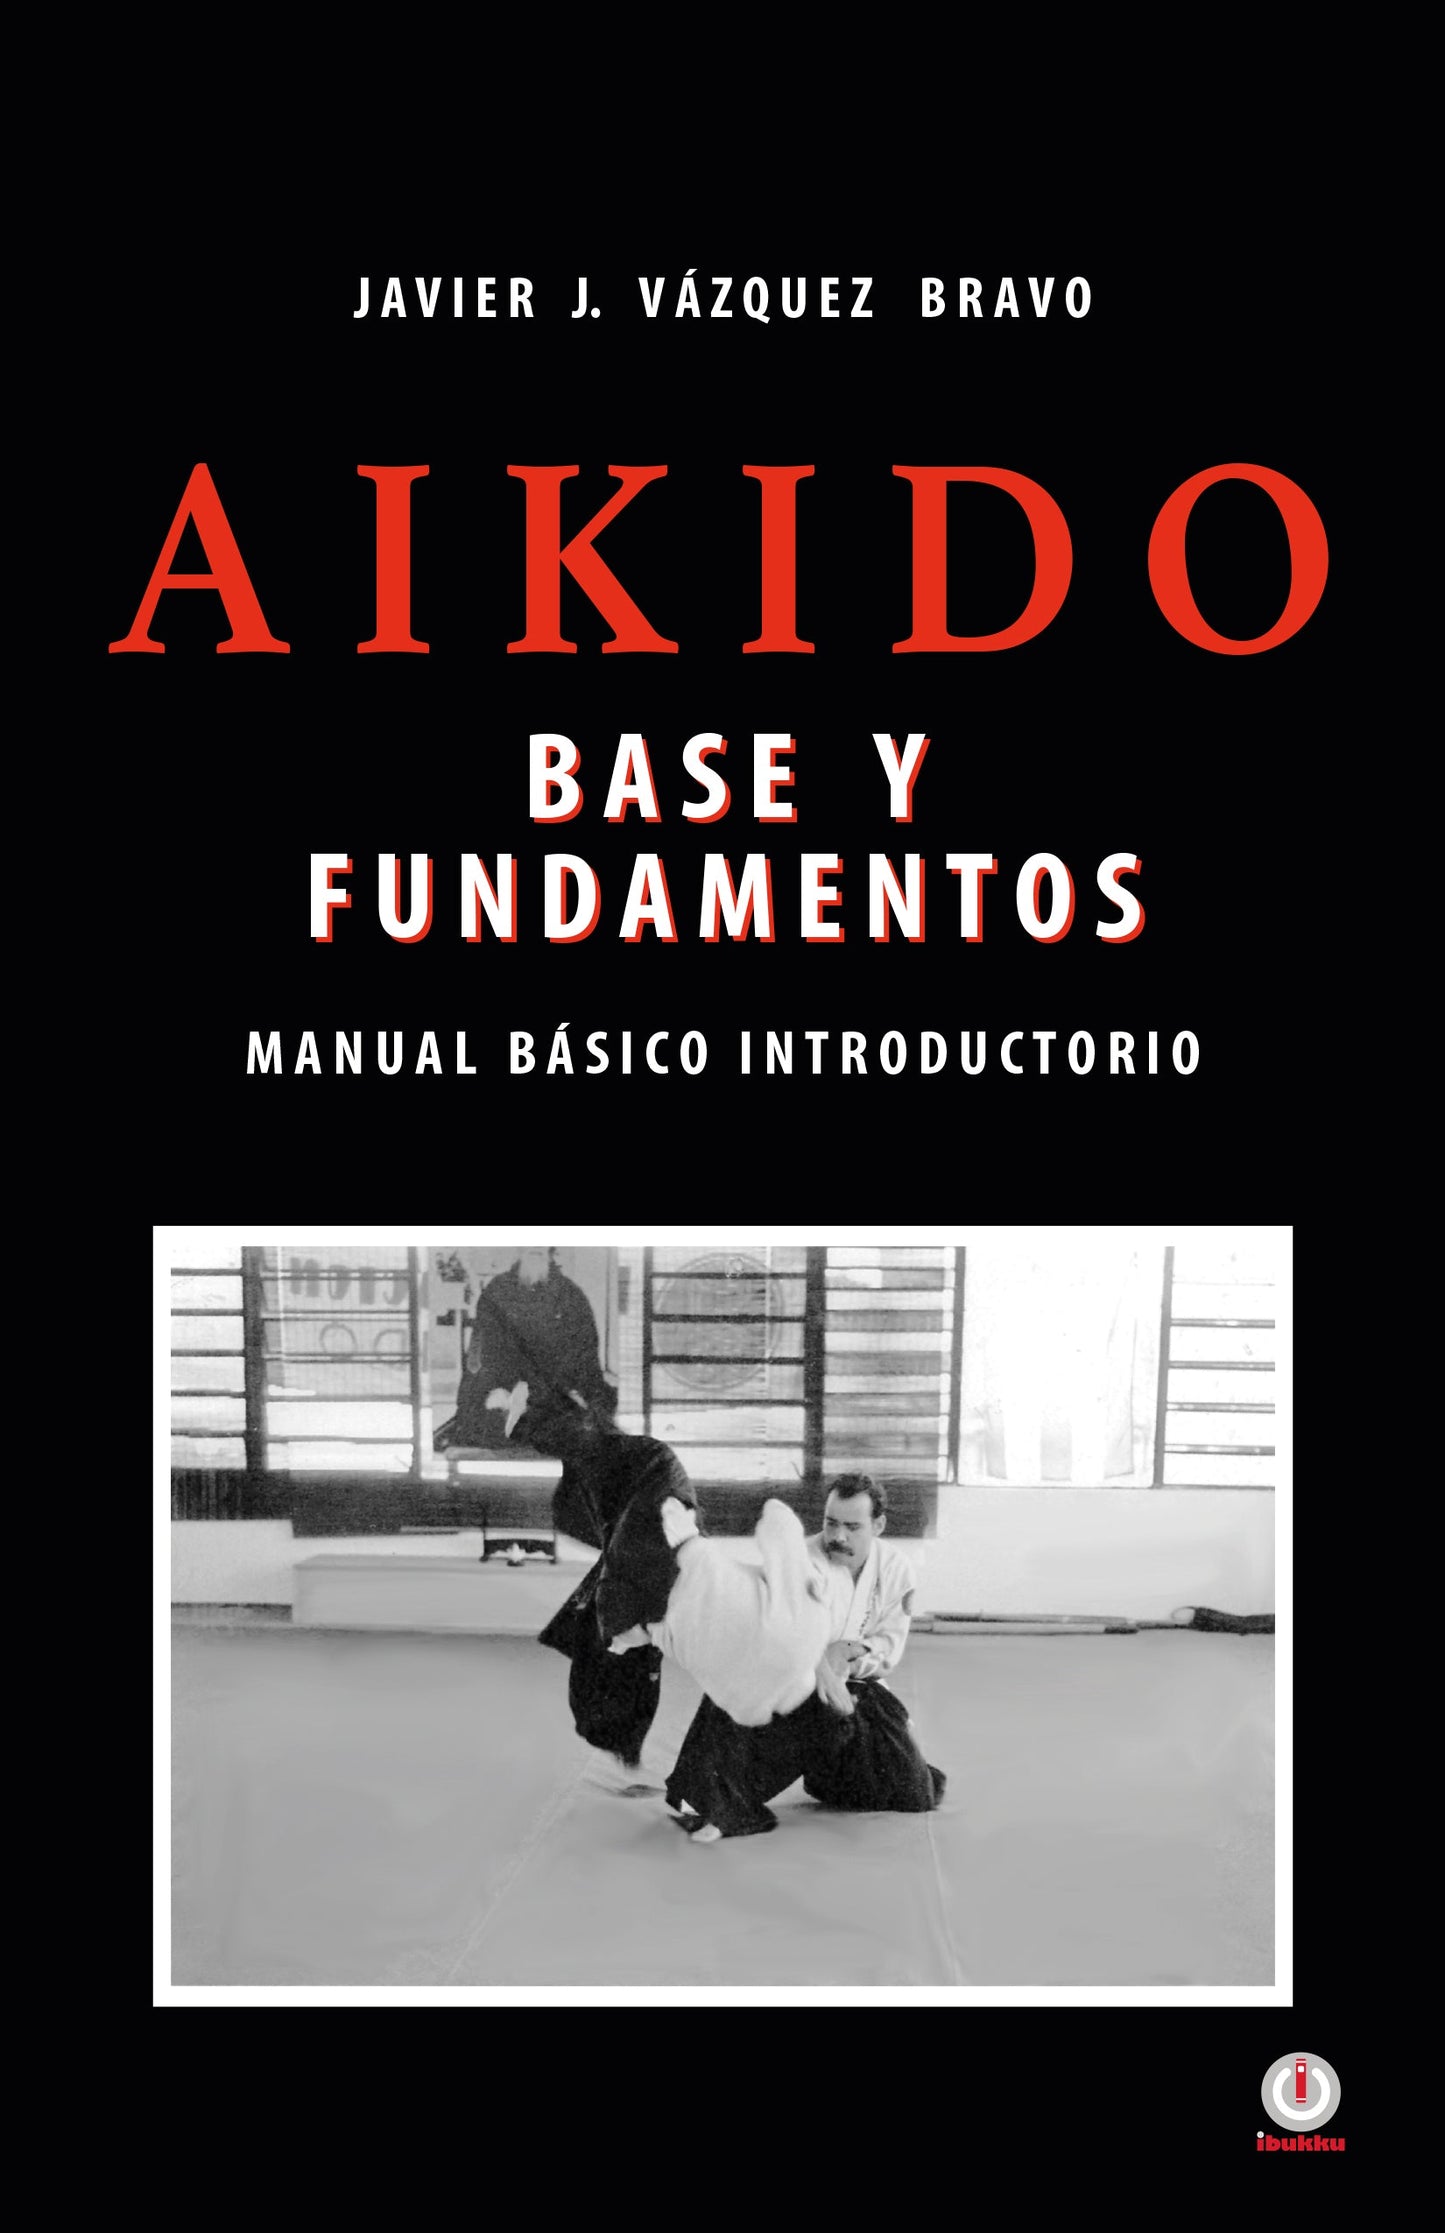 Aikido: Base y fundamentos manual básico introductorio (Impreso)